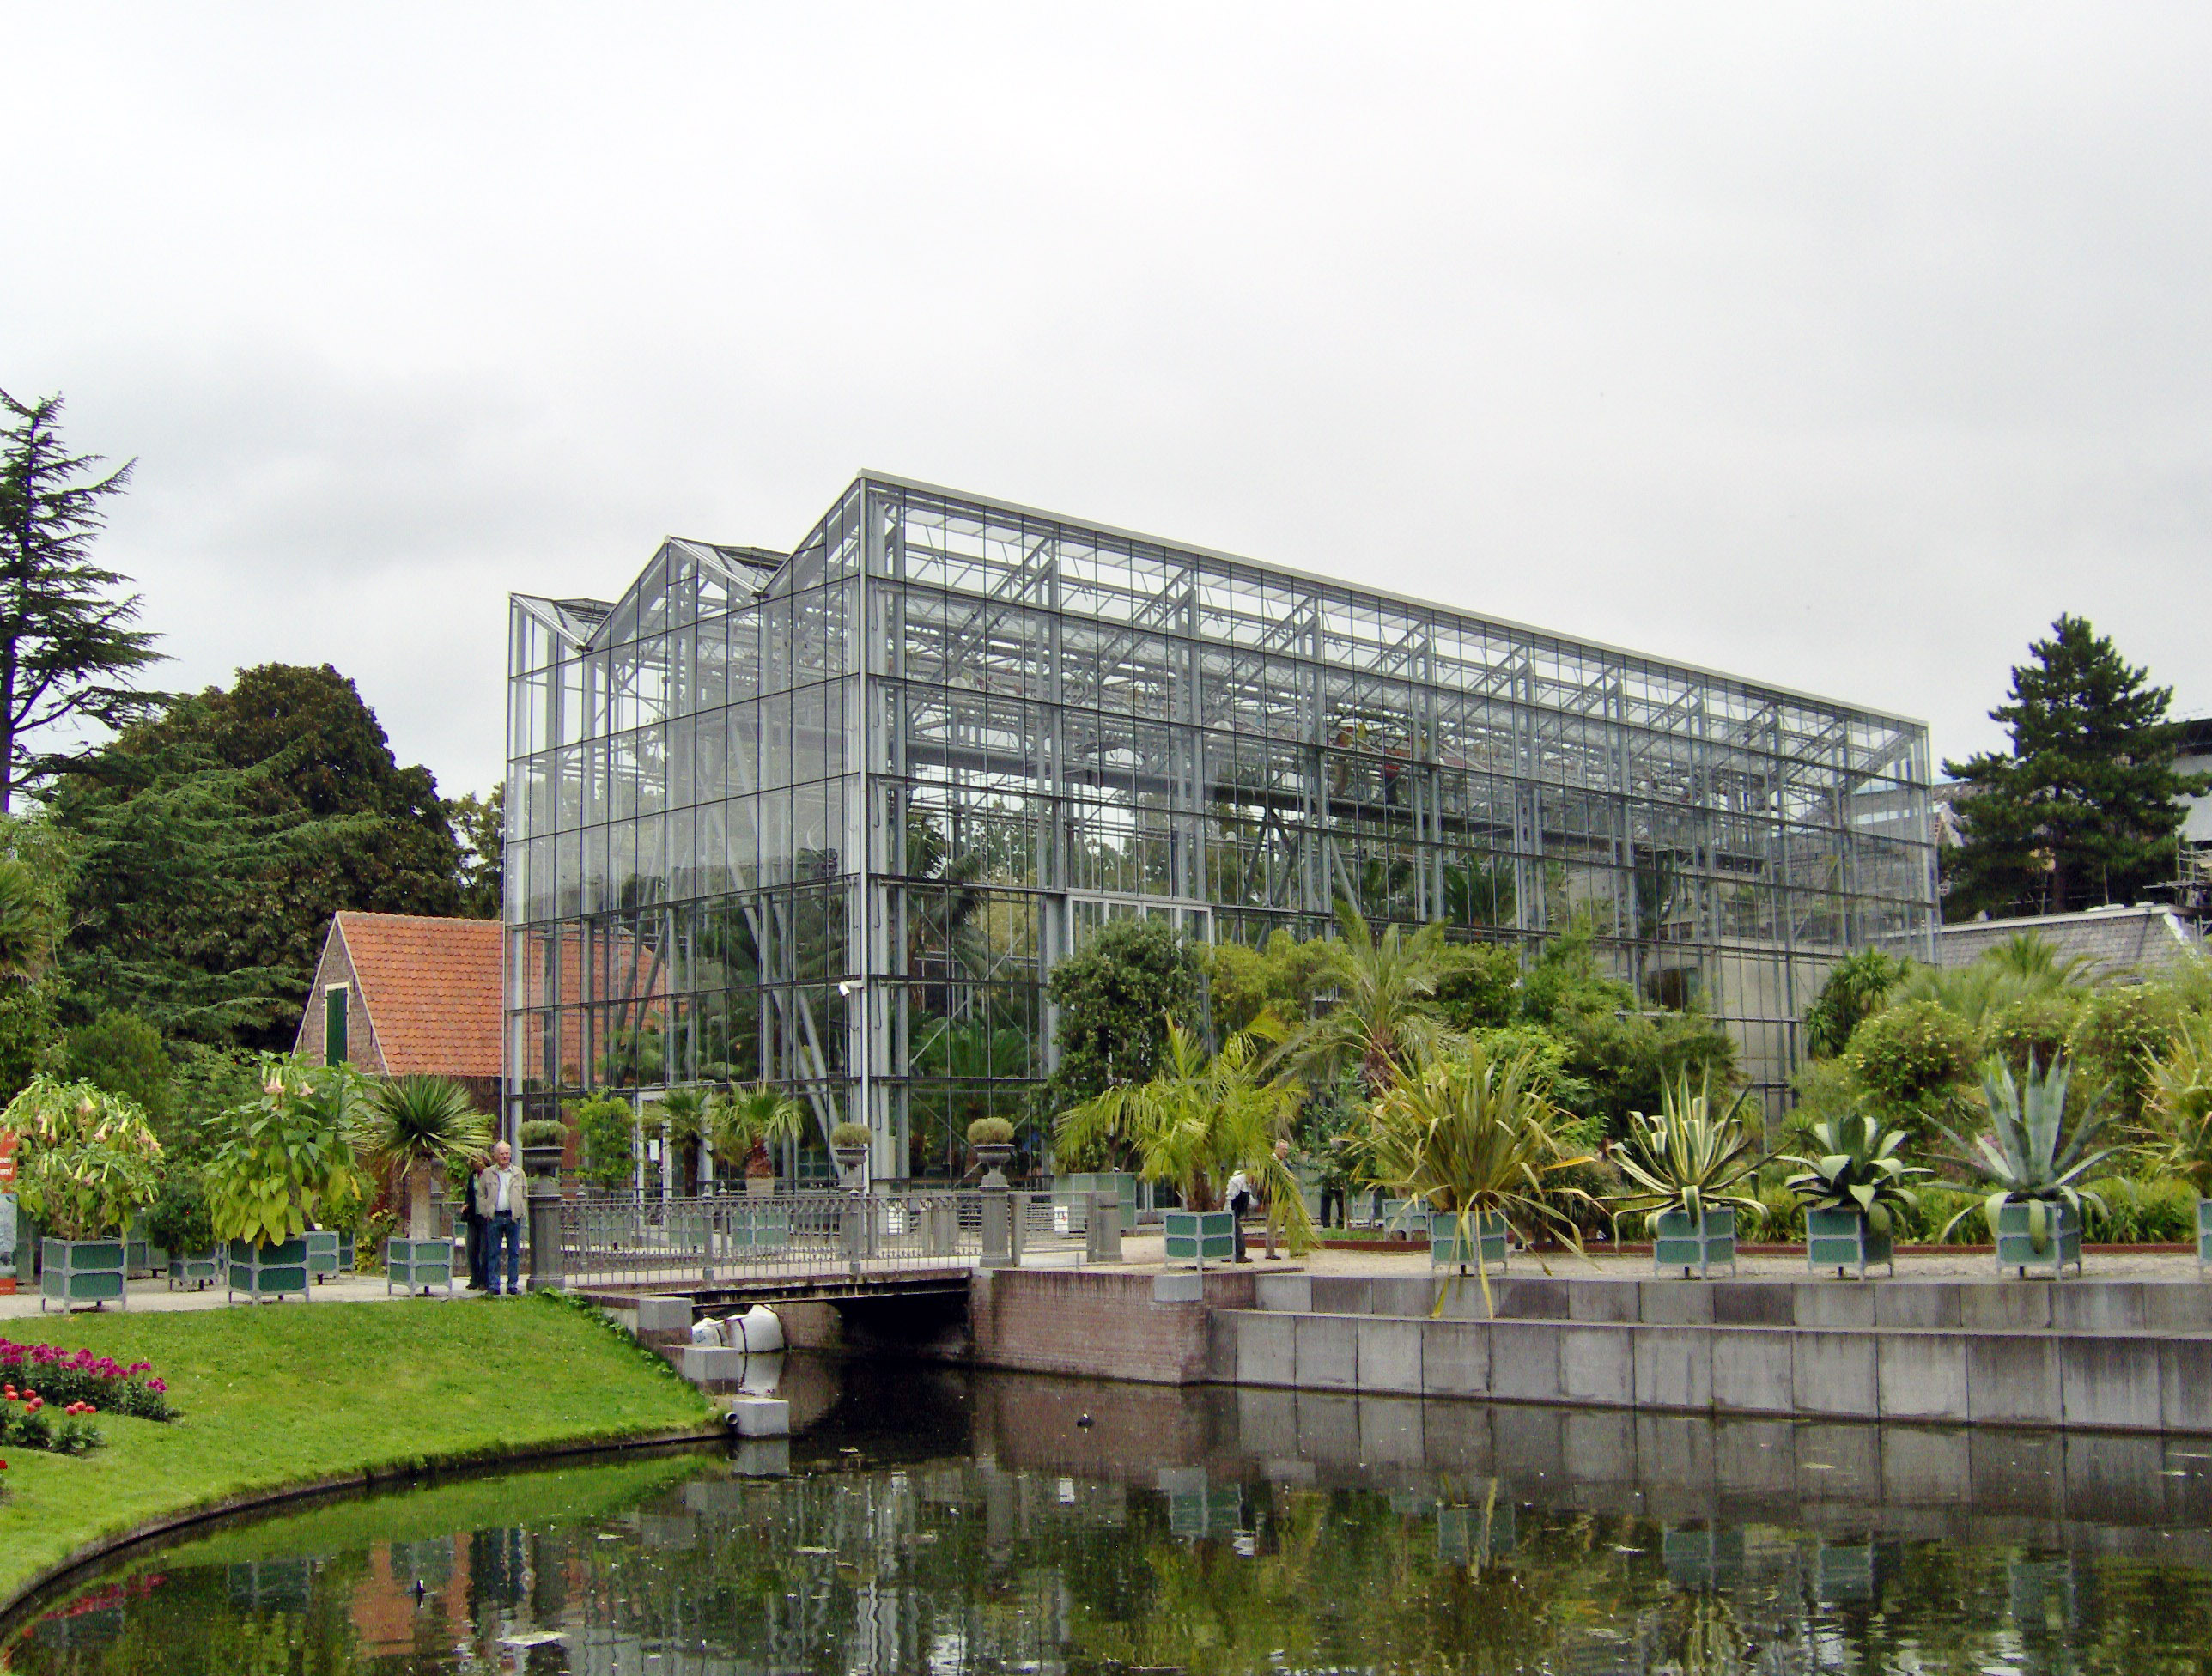 Vierdaagse zomercursus in Hortus botanicus Leiden